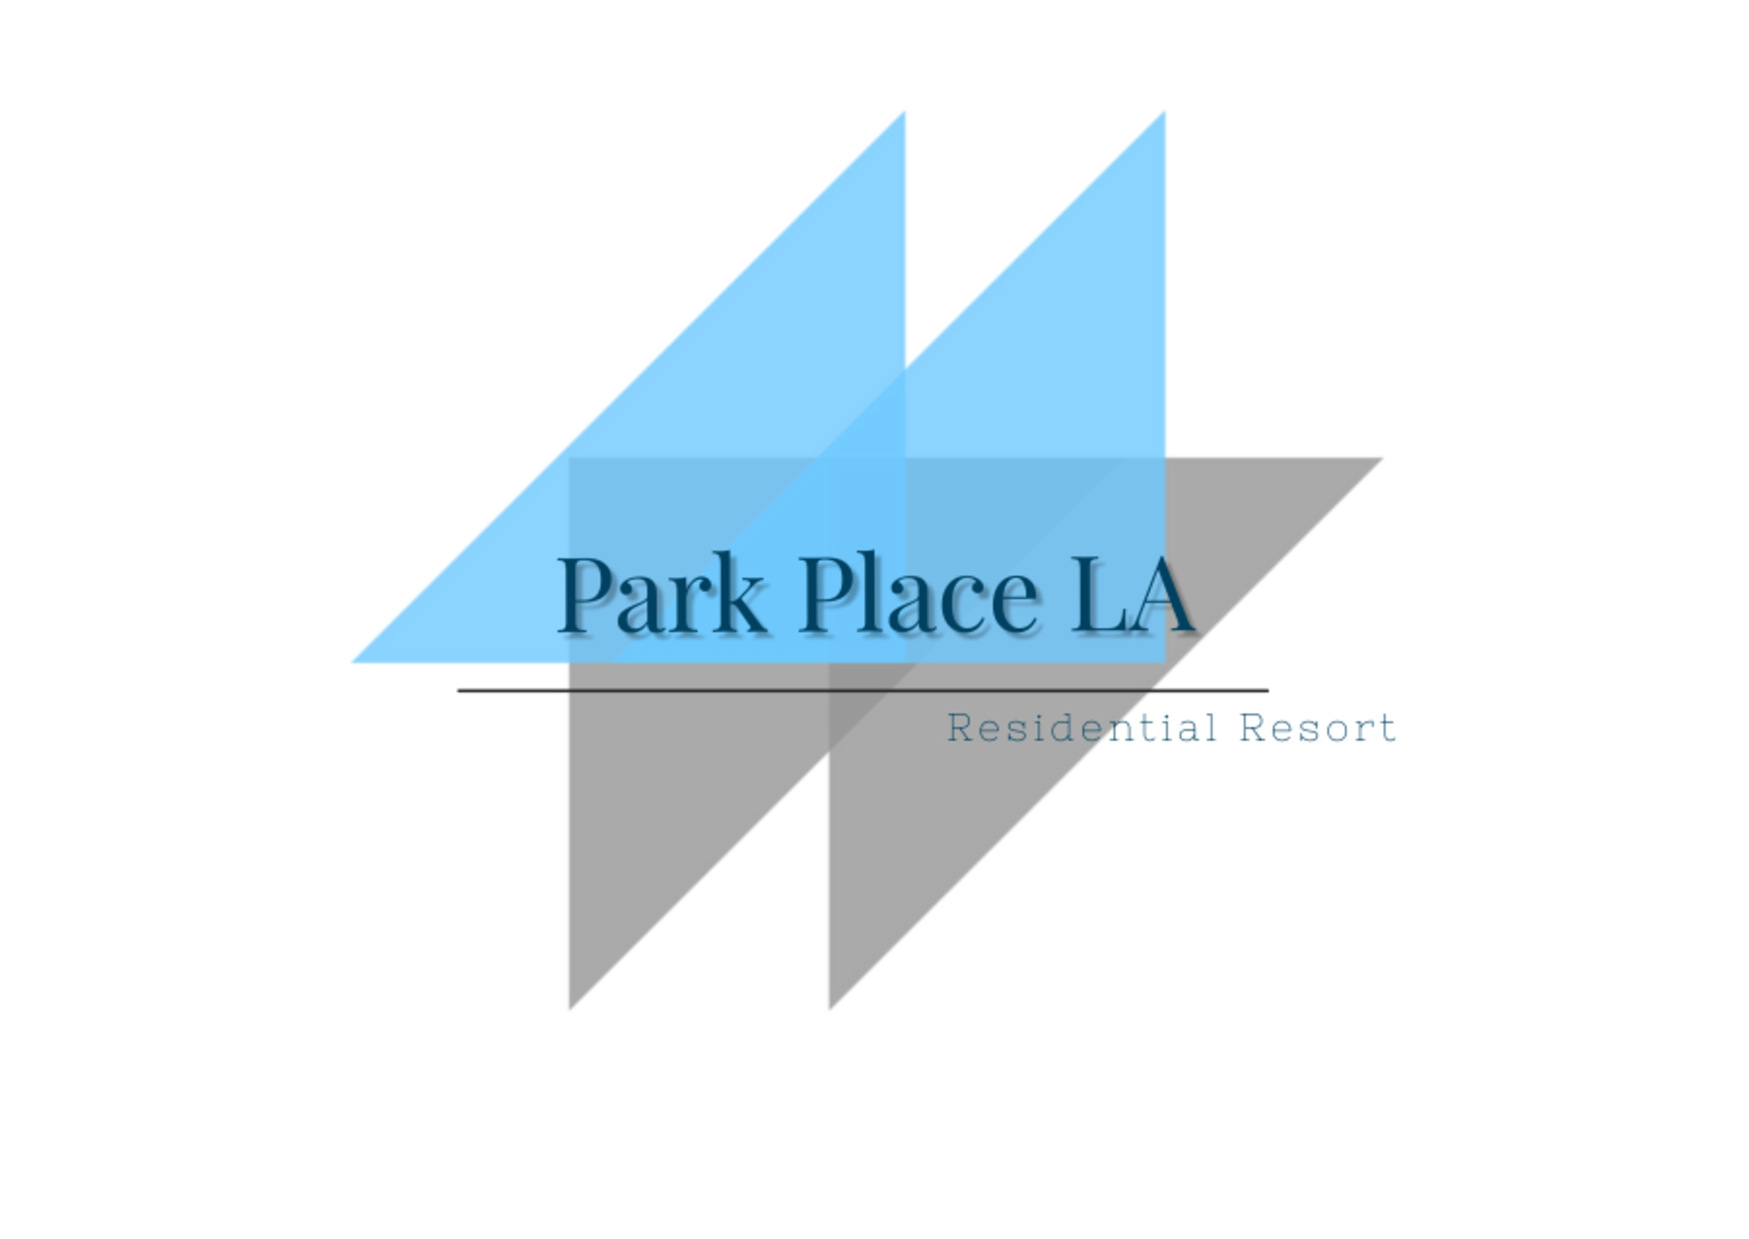 Park Place LA